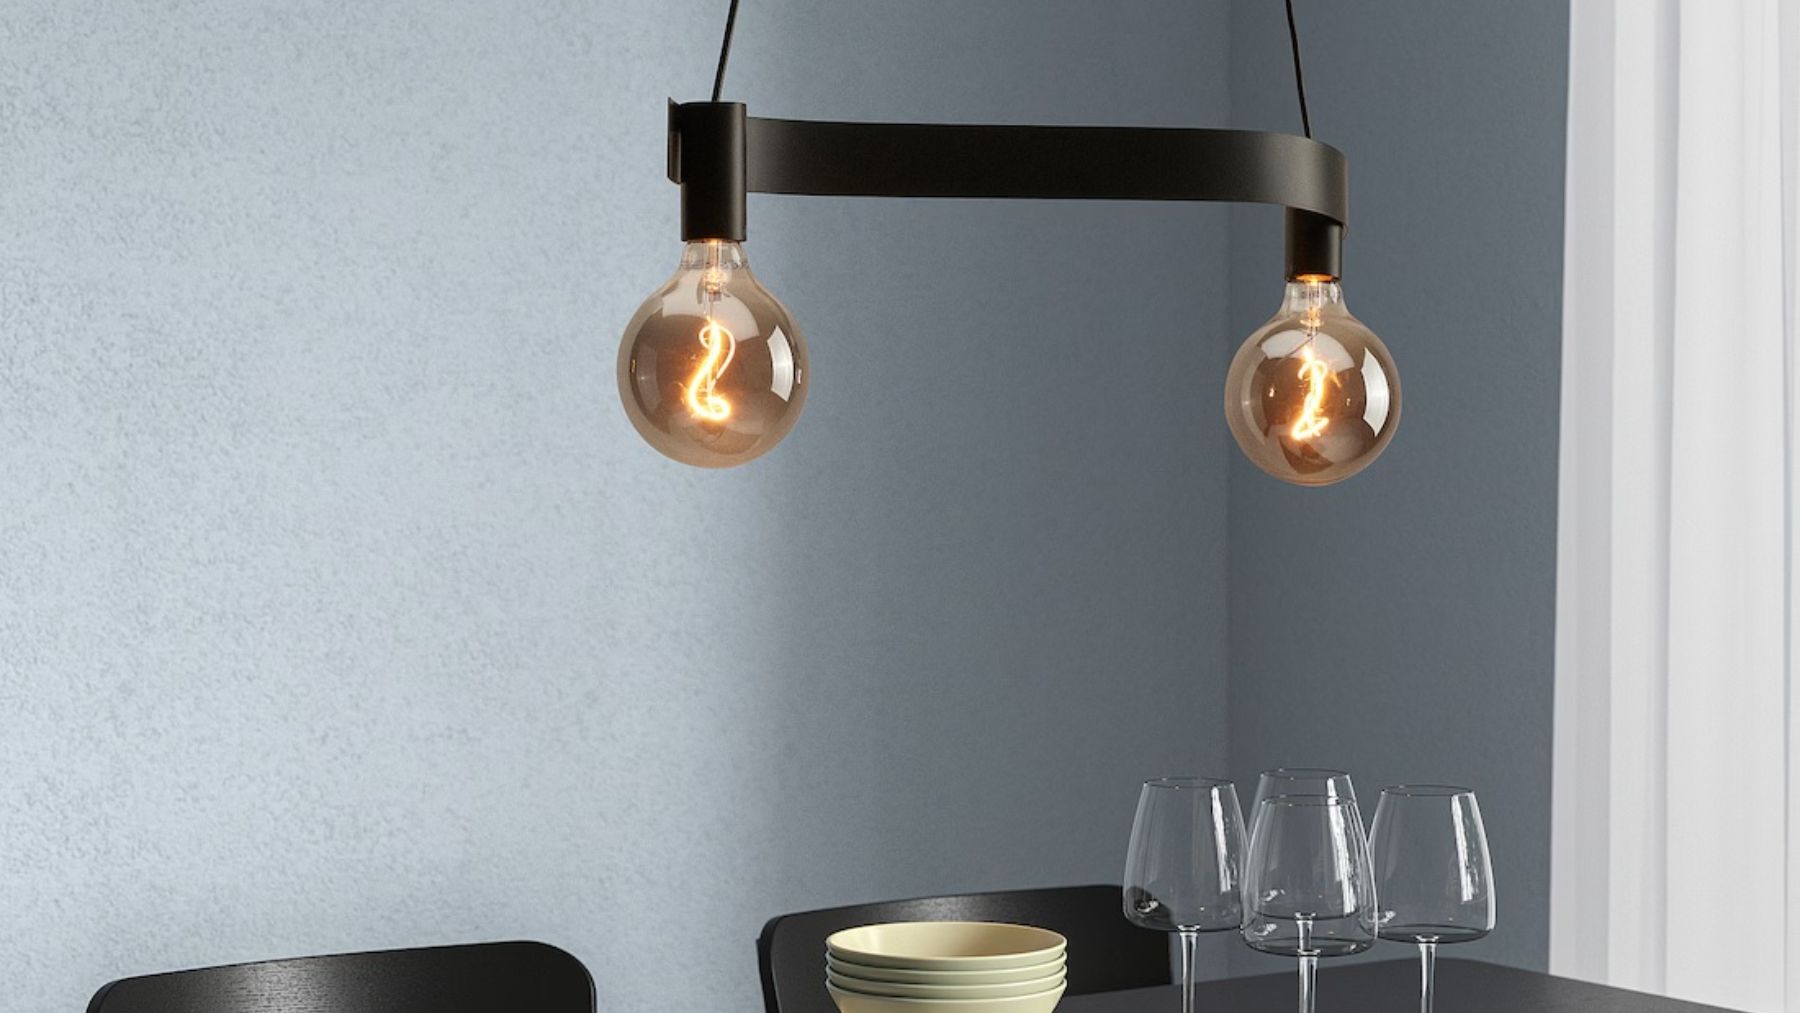 Ikea tiene la lámpara ideal para iluminar y decorar.